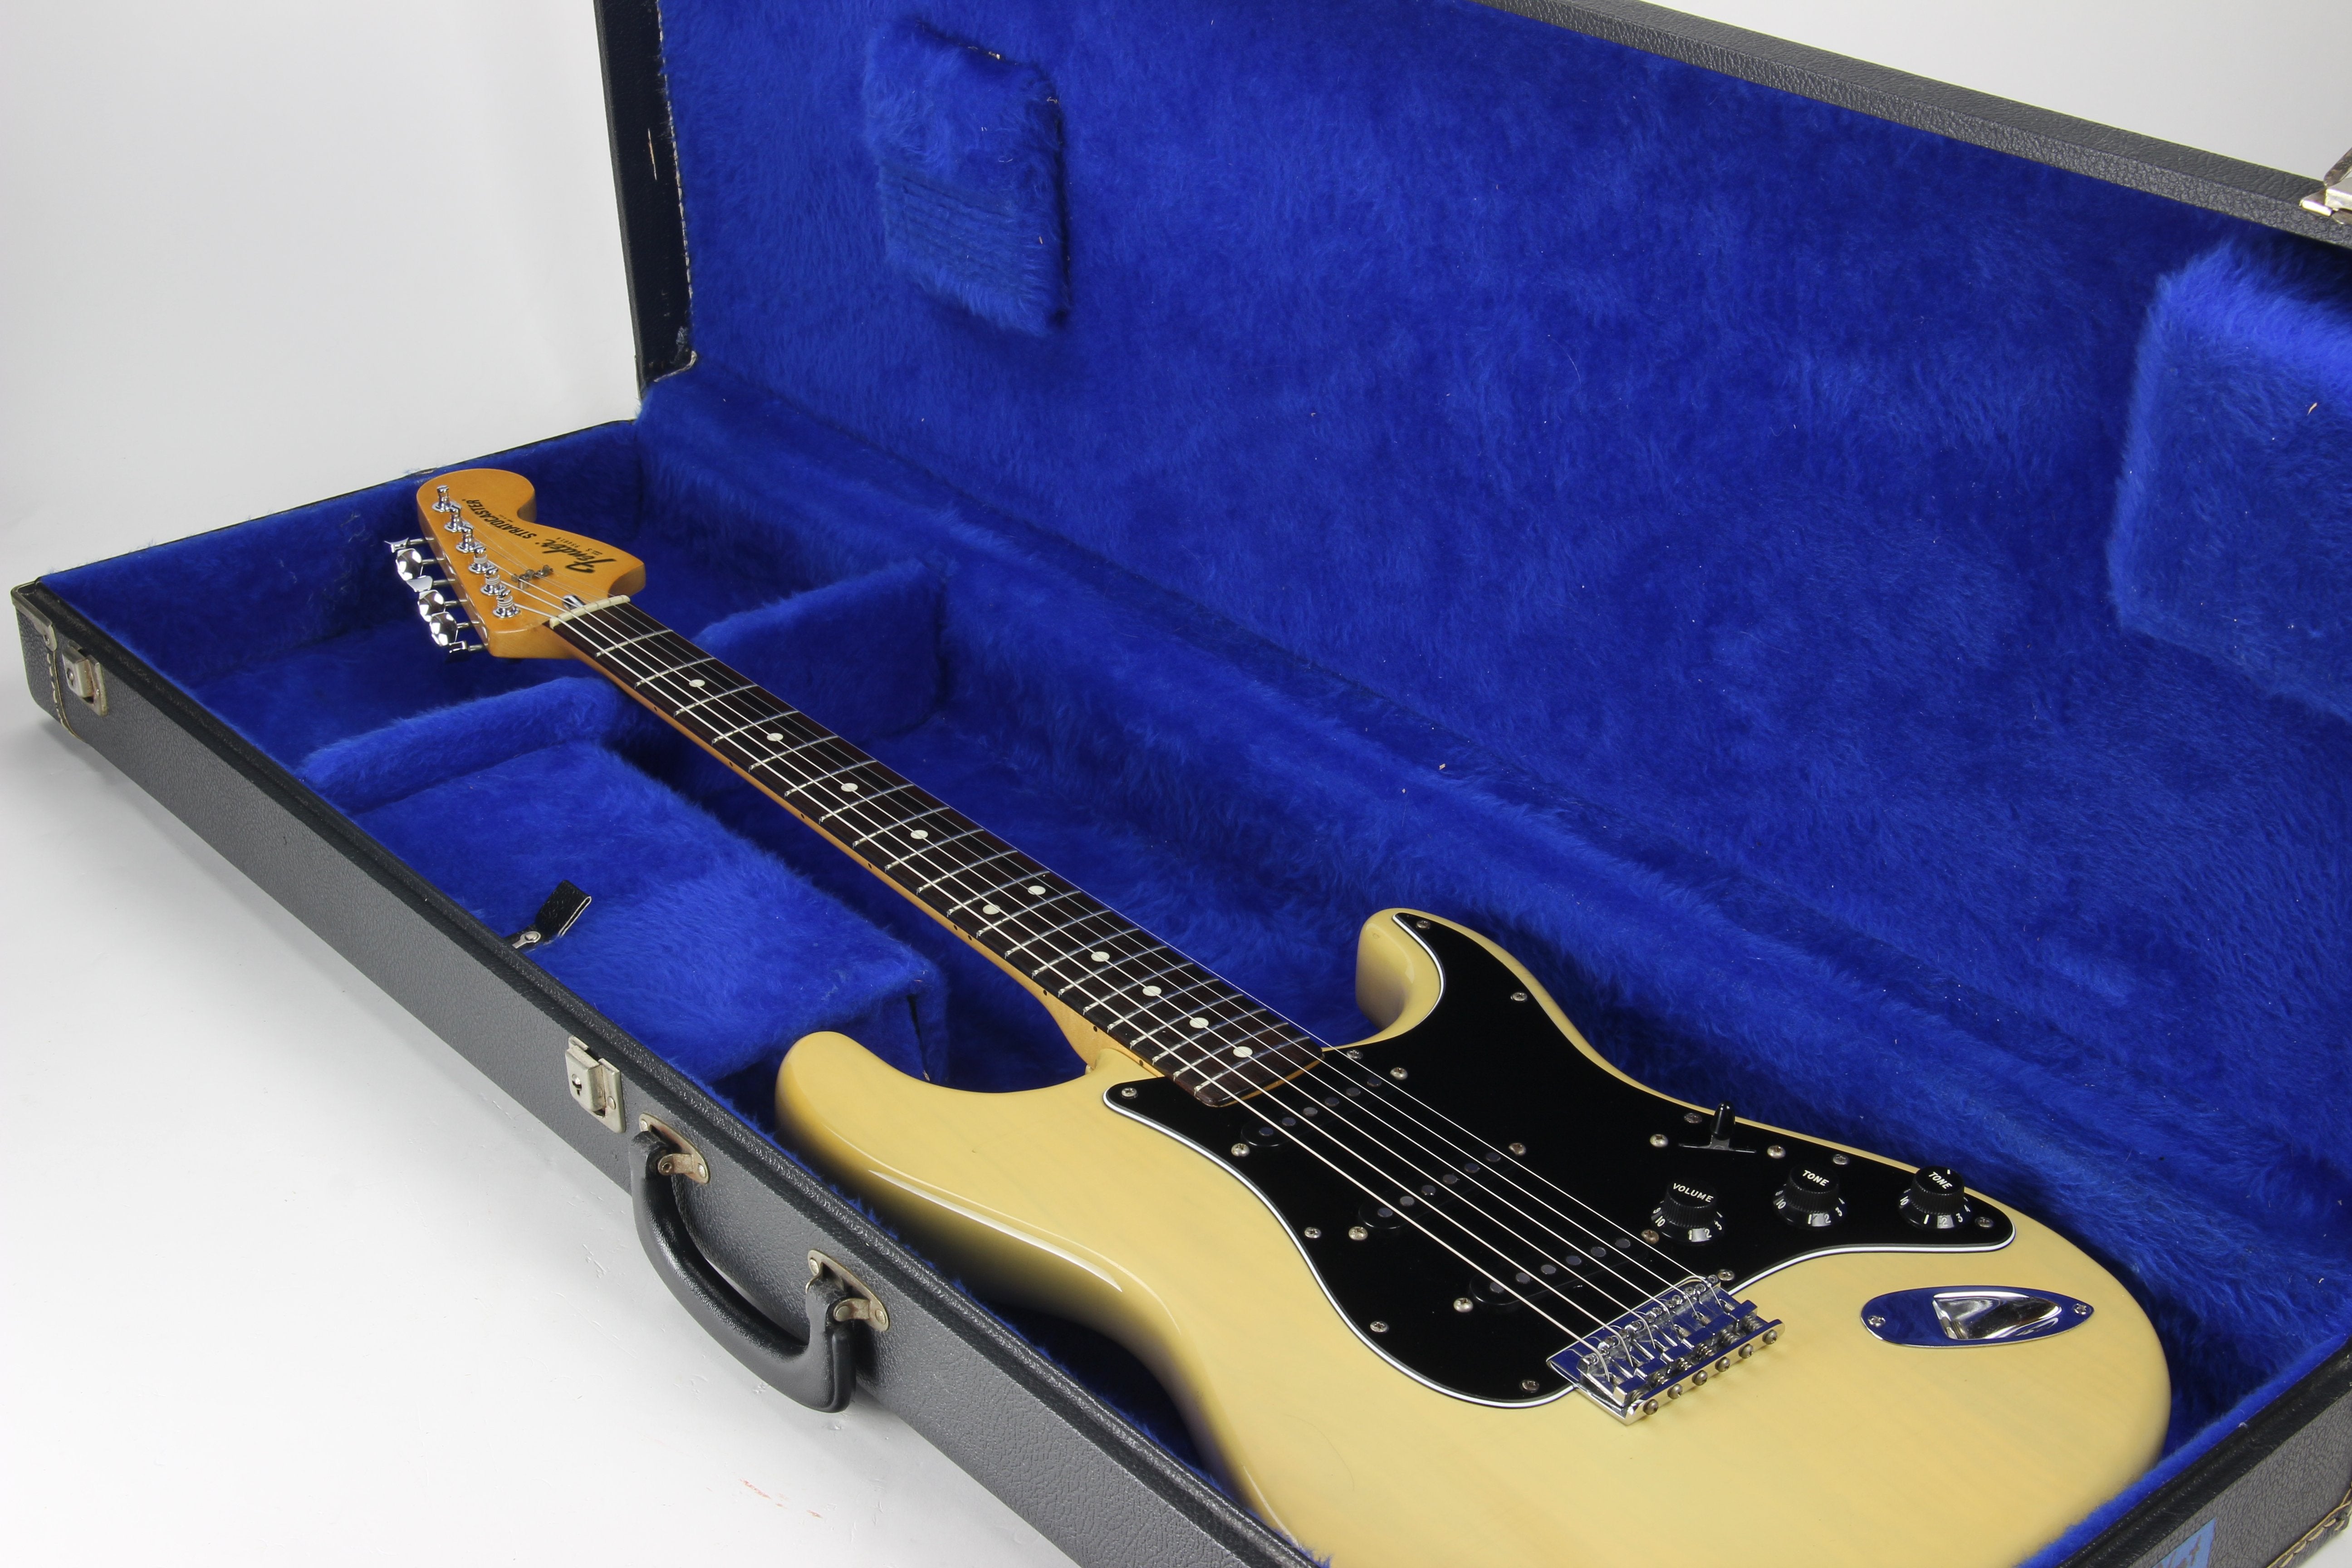 *SOLD*  1979 Fender Stratocaster Blonde Ash Hardtail - Original See Through Finish! 1980 Vintage!